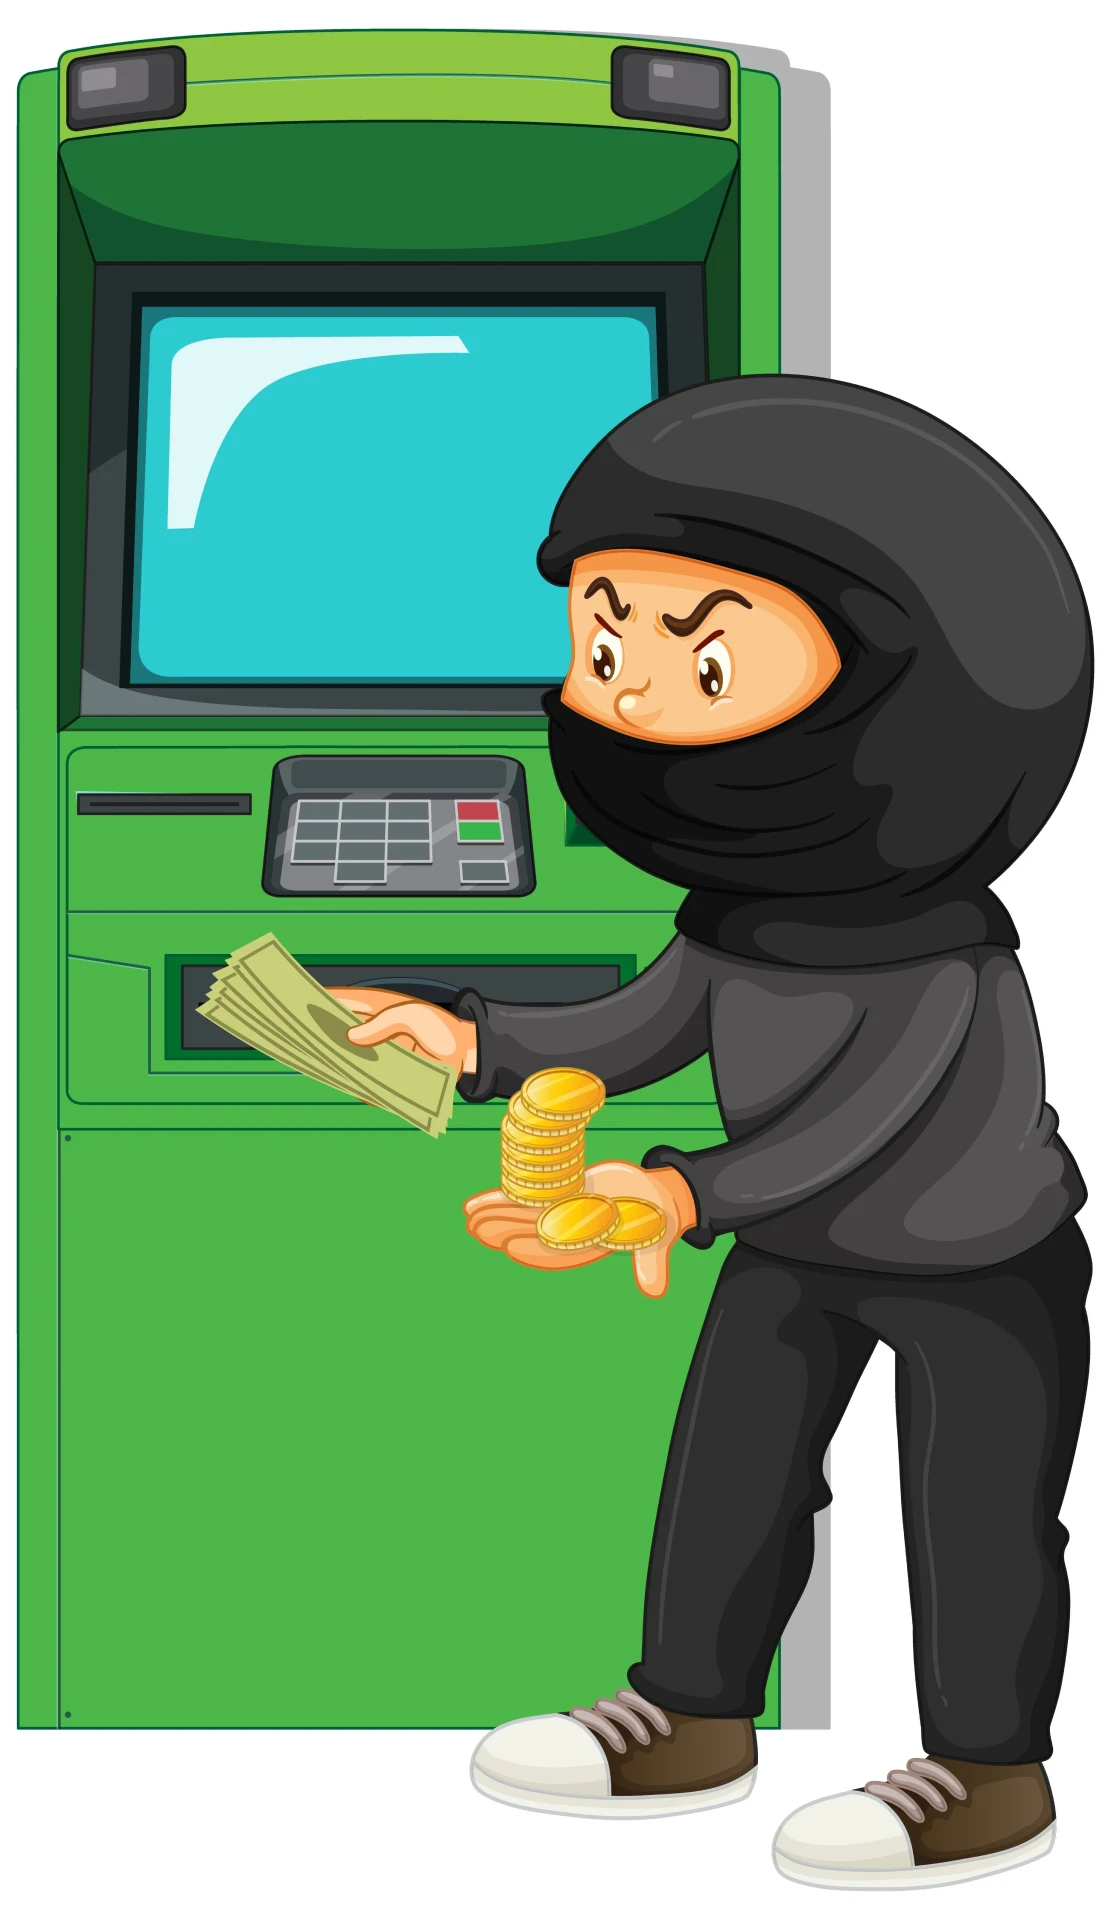 атака на АТМ (банкомат)